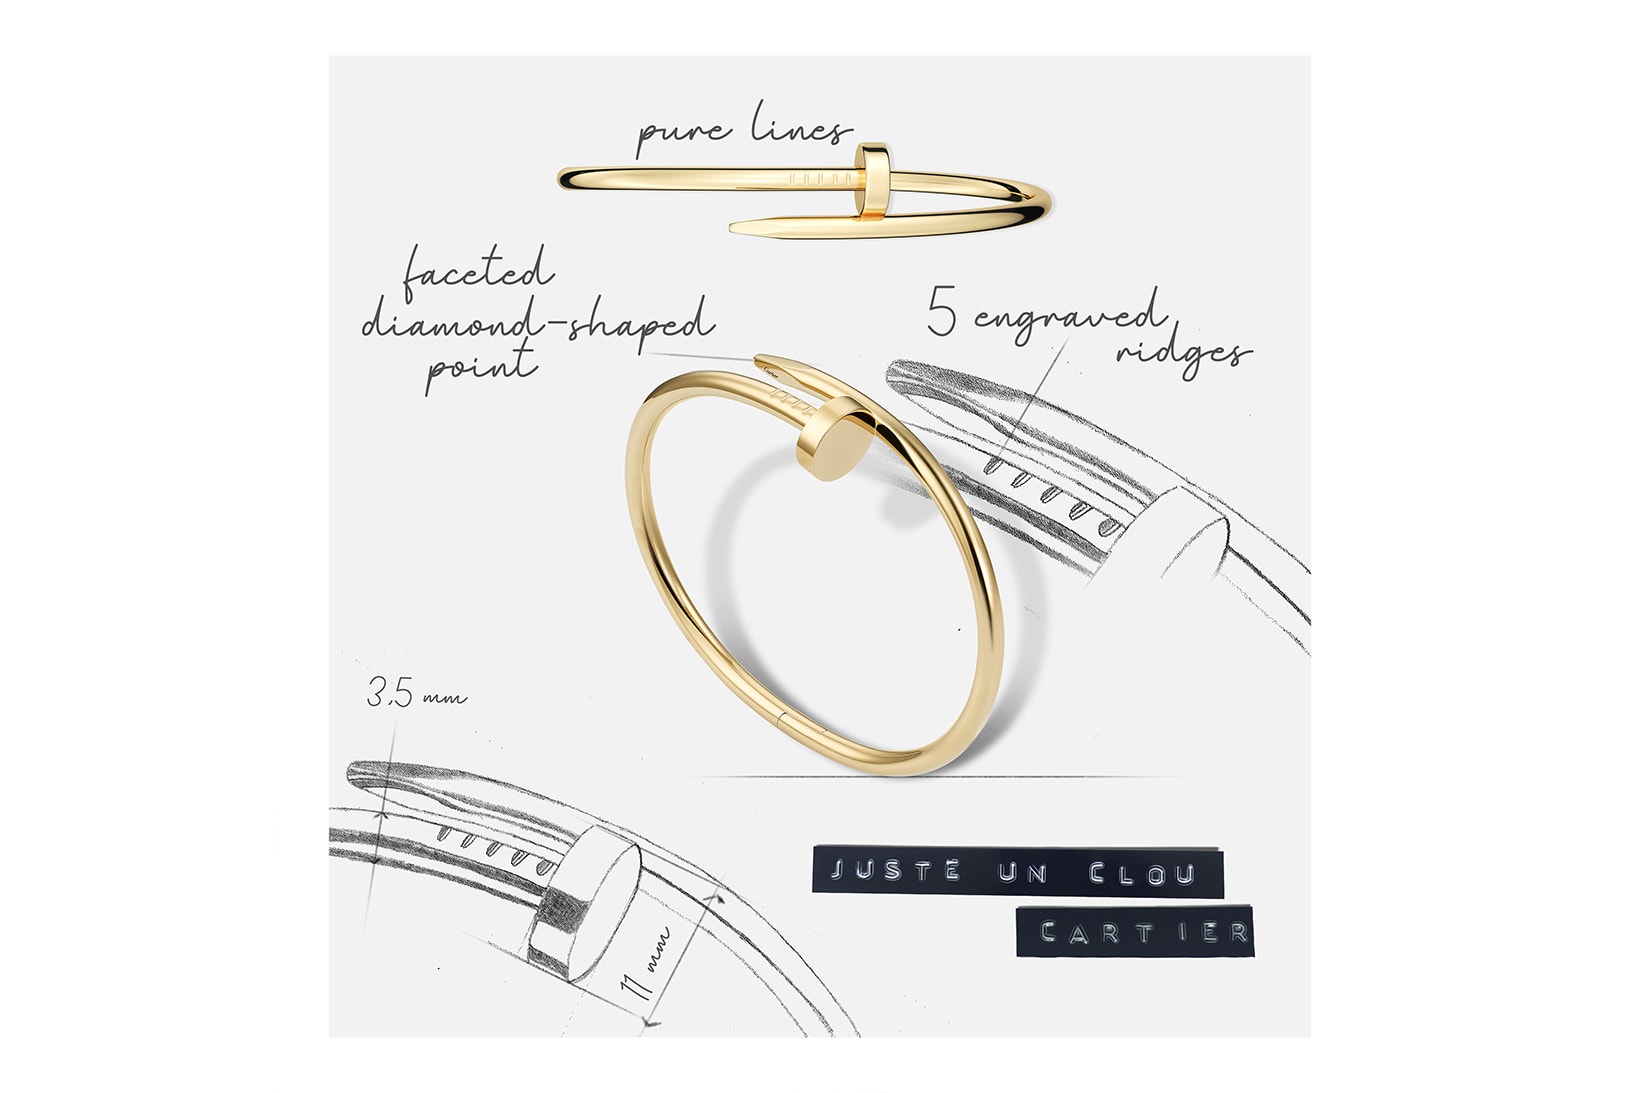 Cartier Juste un Clou Bracelet Jewelry Culture of Design Campaign